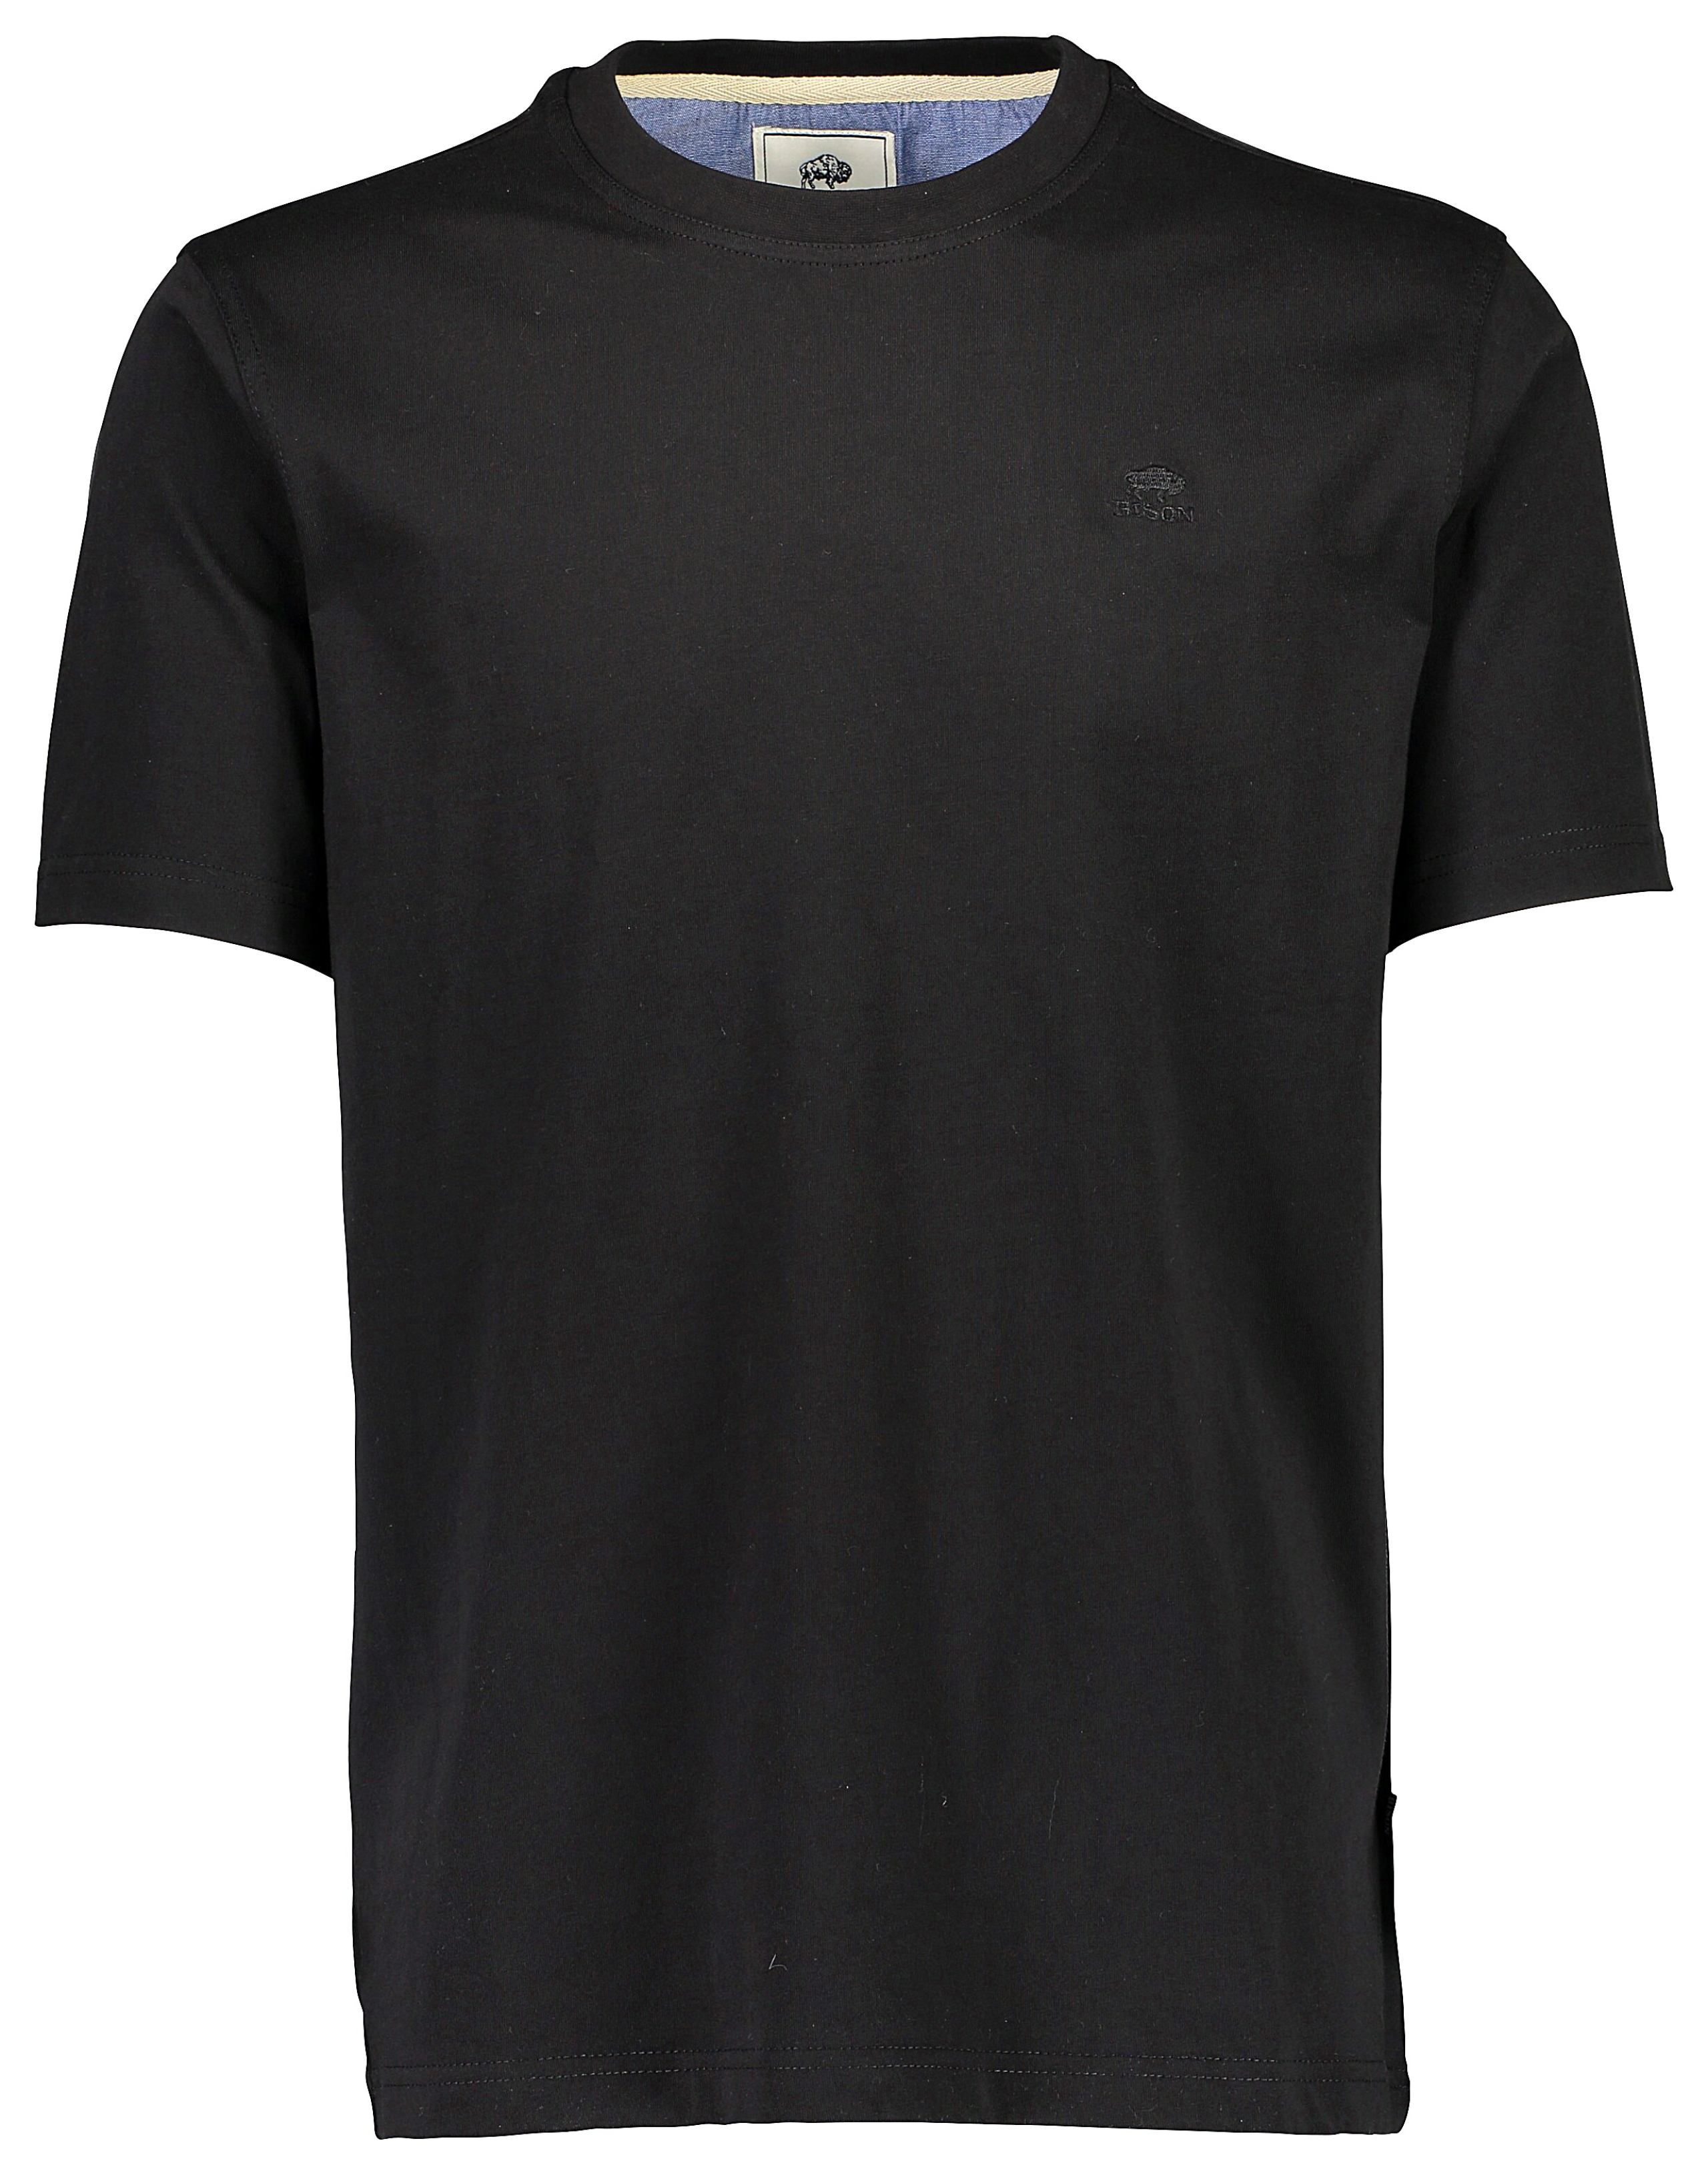 Bison T-shirt sort / black